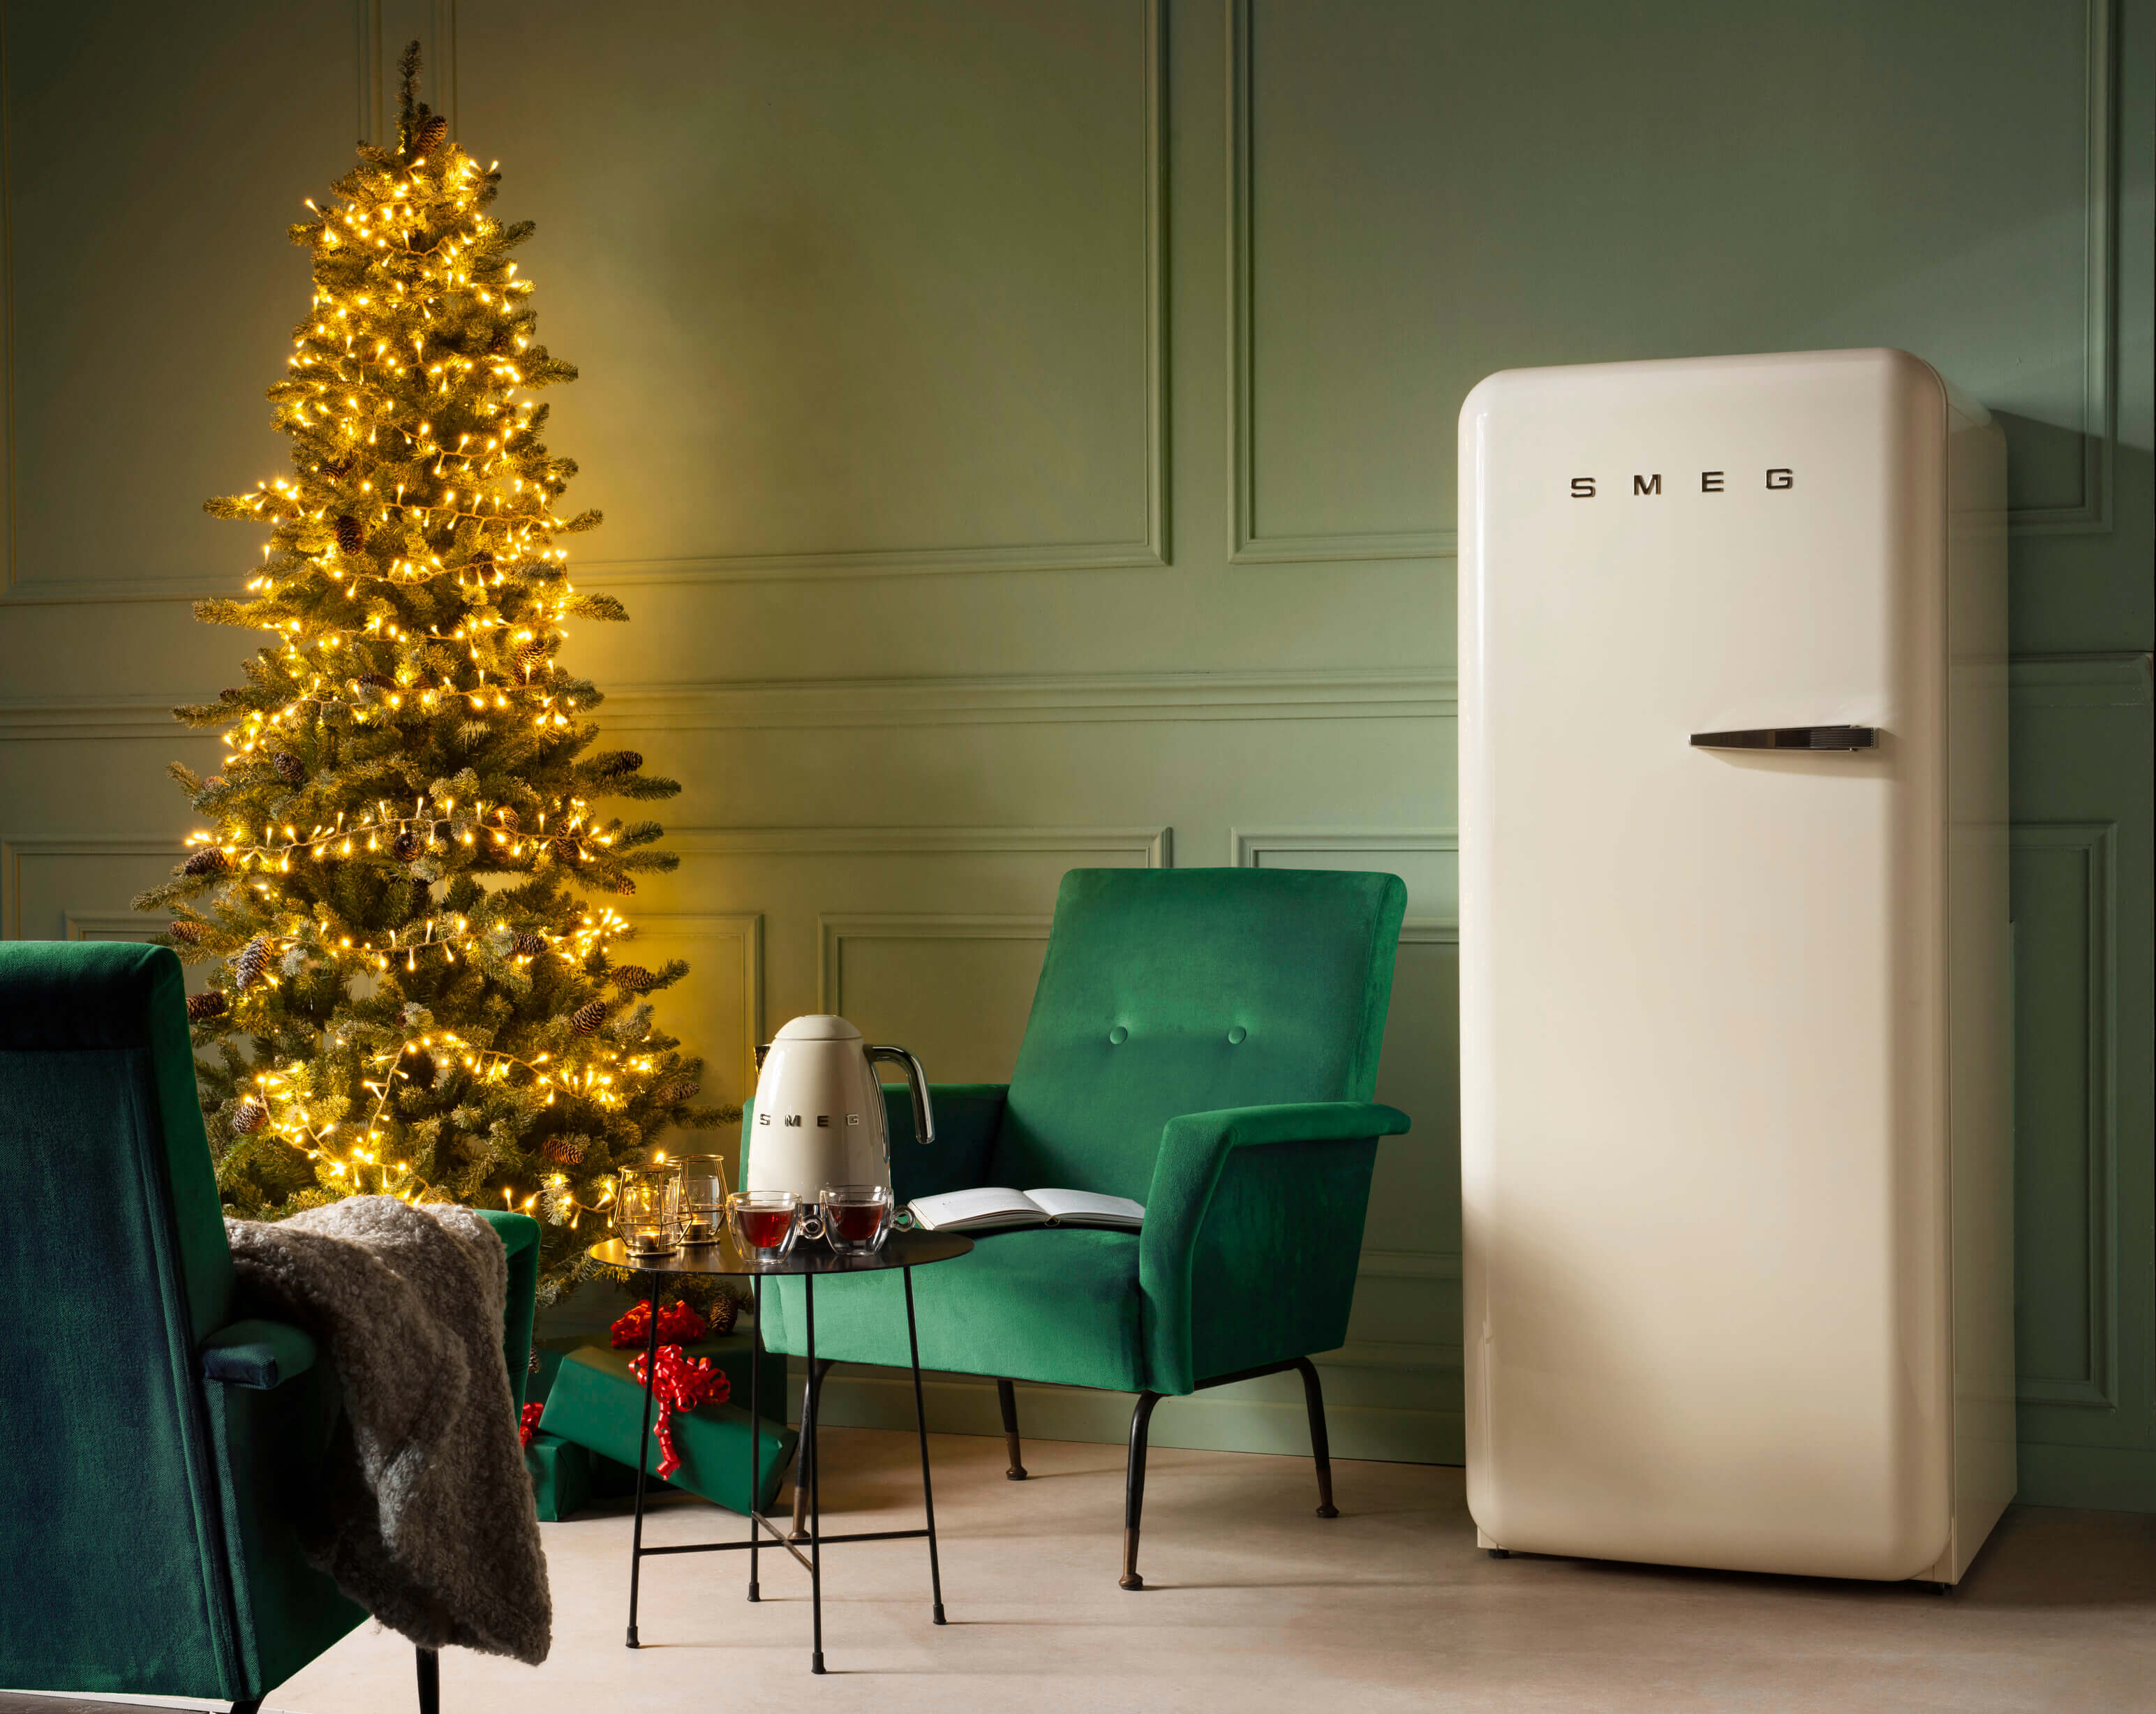 Retro SMEG Kühlschrank in einer festlichen Küche mit einem beleuchteten Weihnachtsbaum und grünen Stühlen.